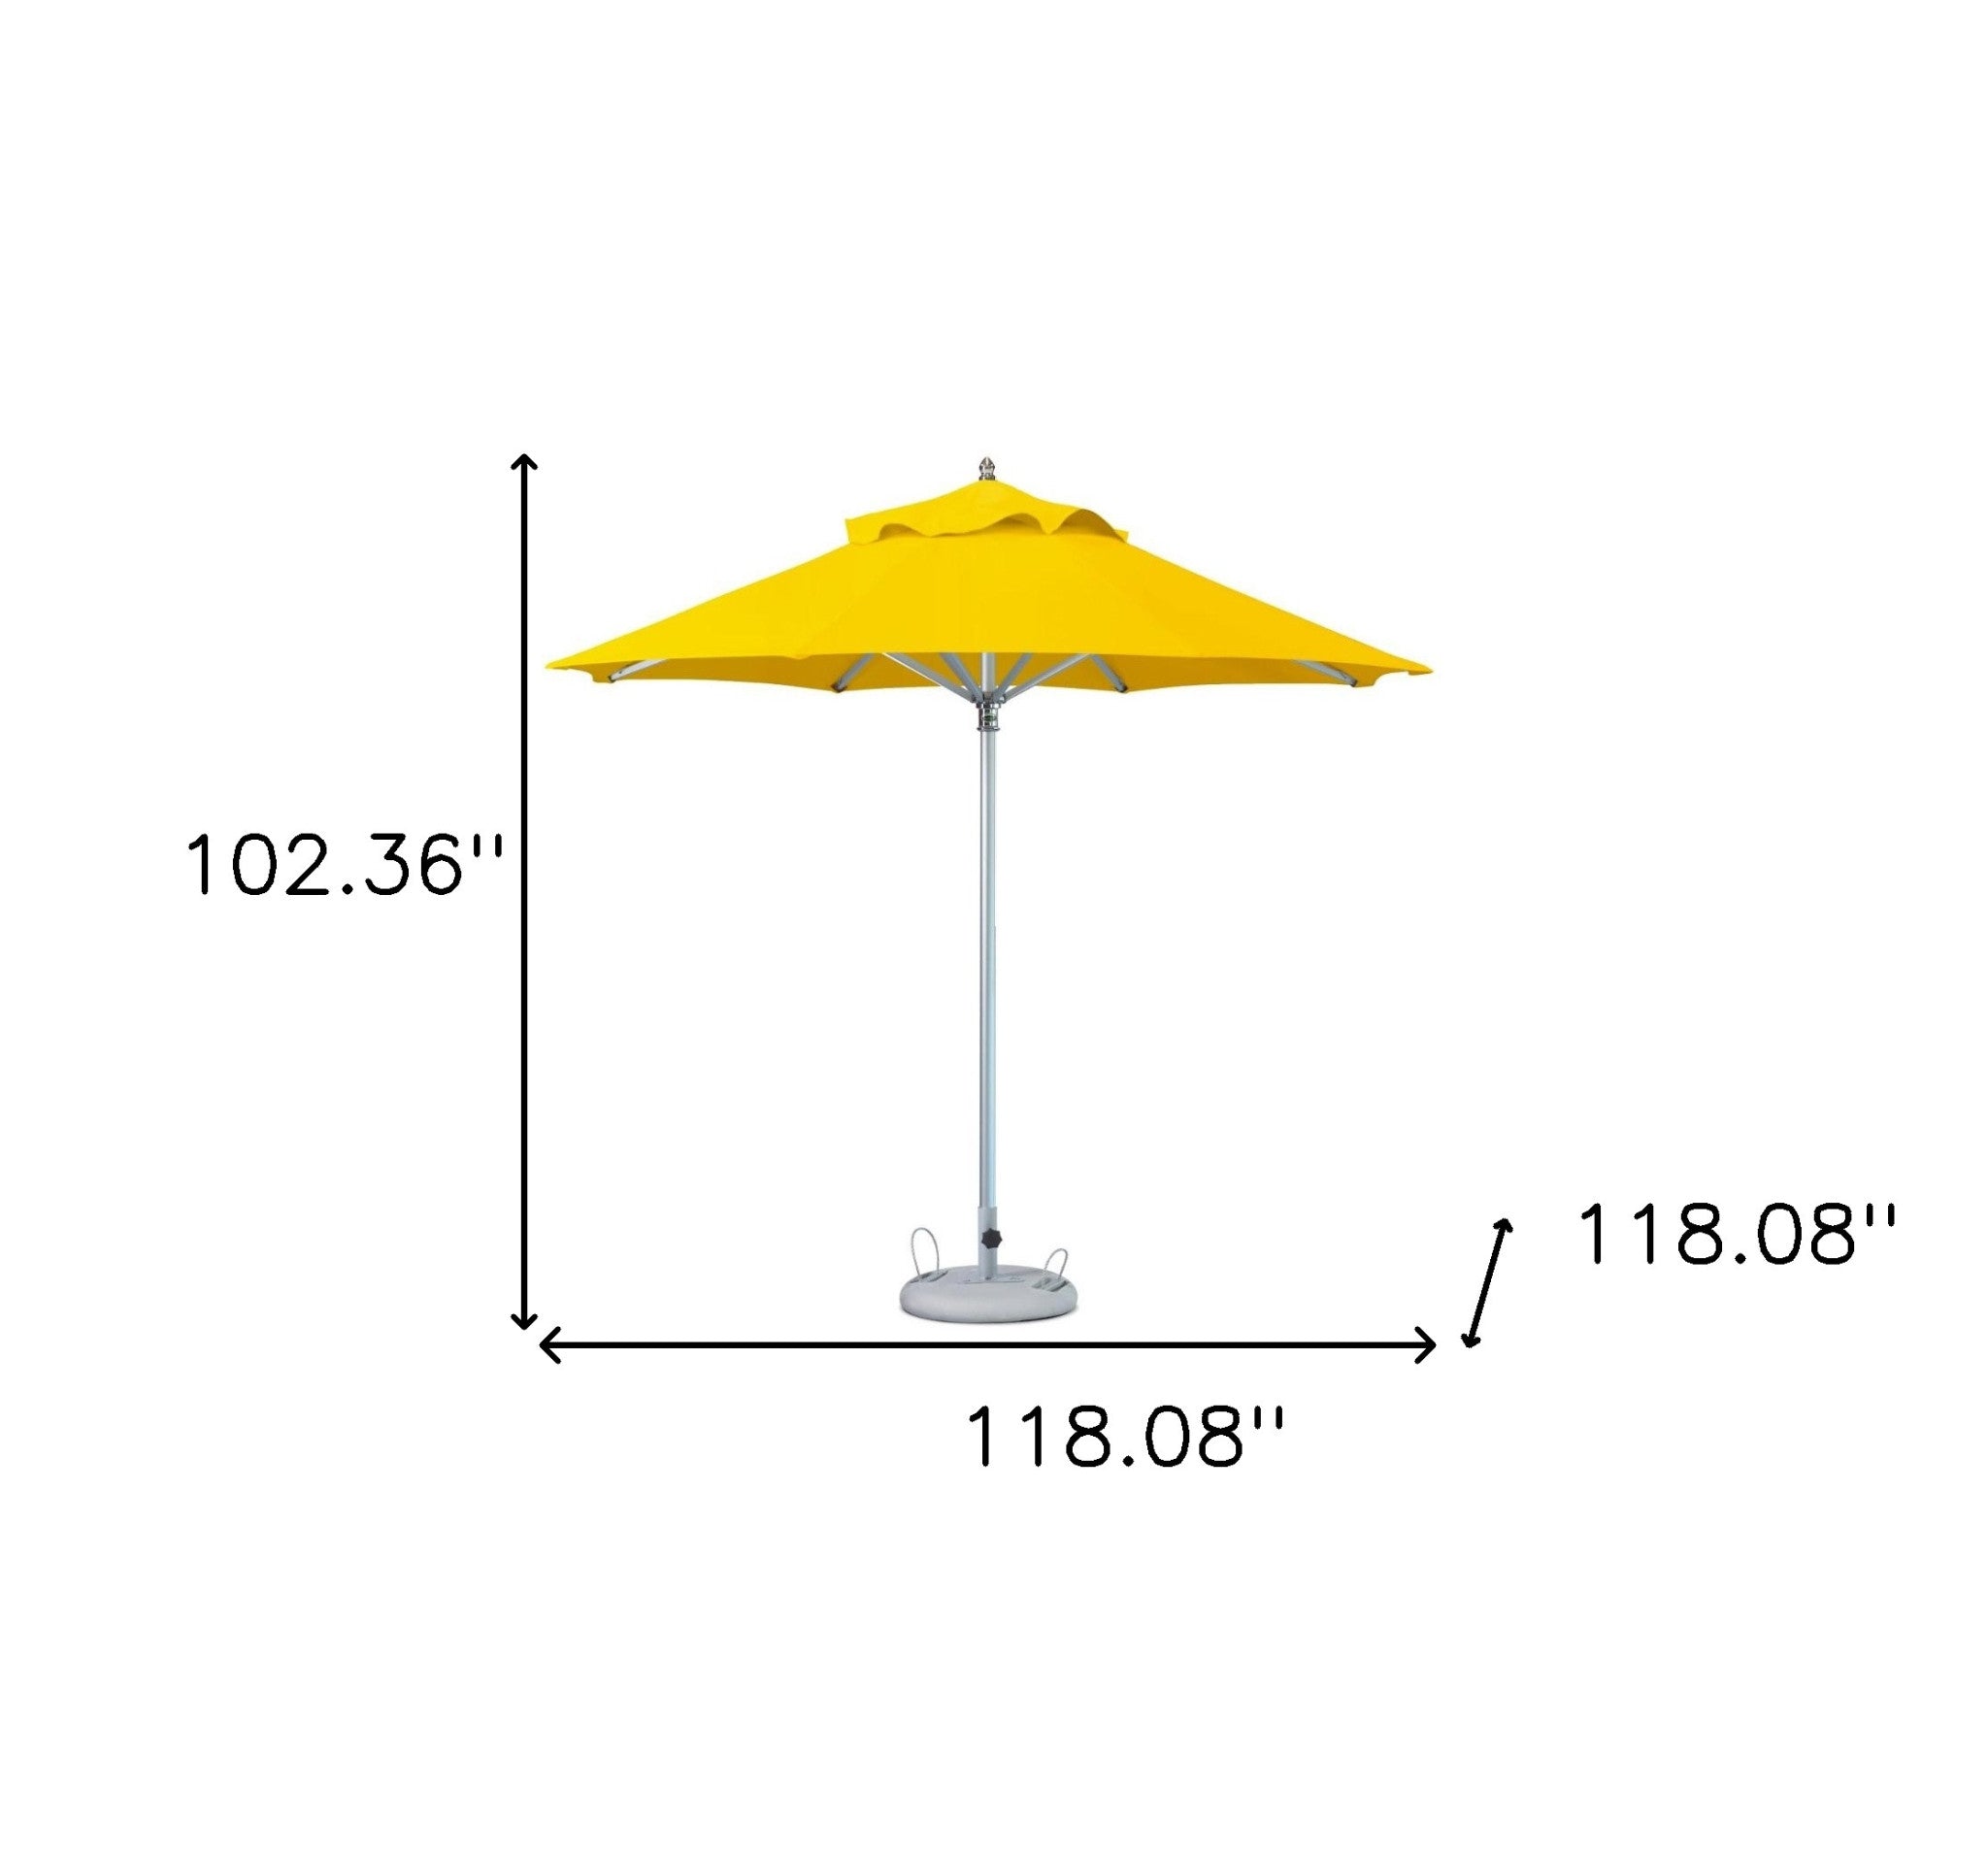 10' Yellow Polyester Round Market Patio Umbrella